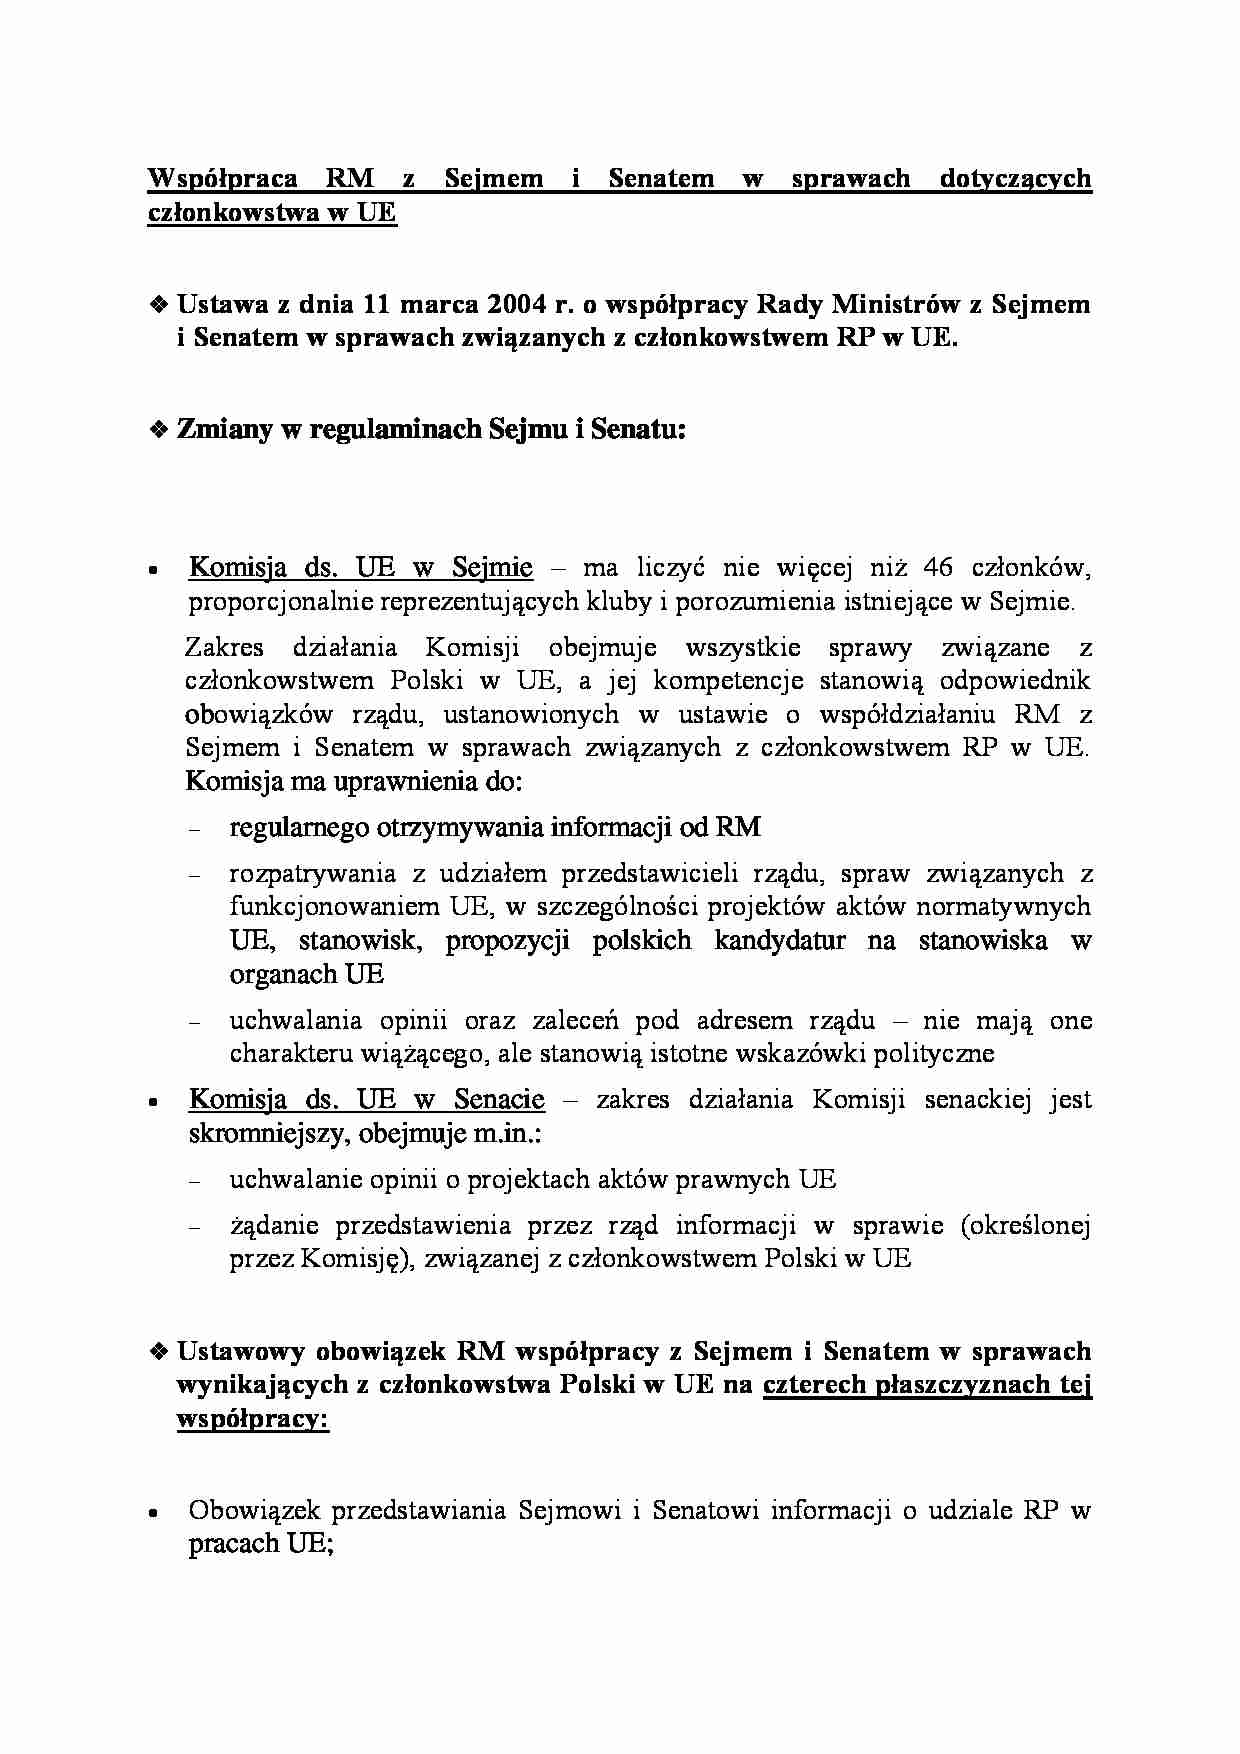 Współpraca RM z Sejmem i Senatem - omówienie - strona 1